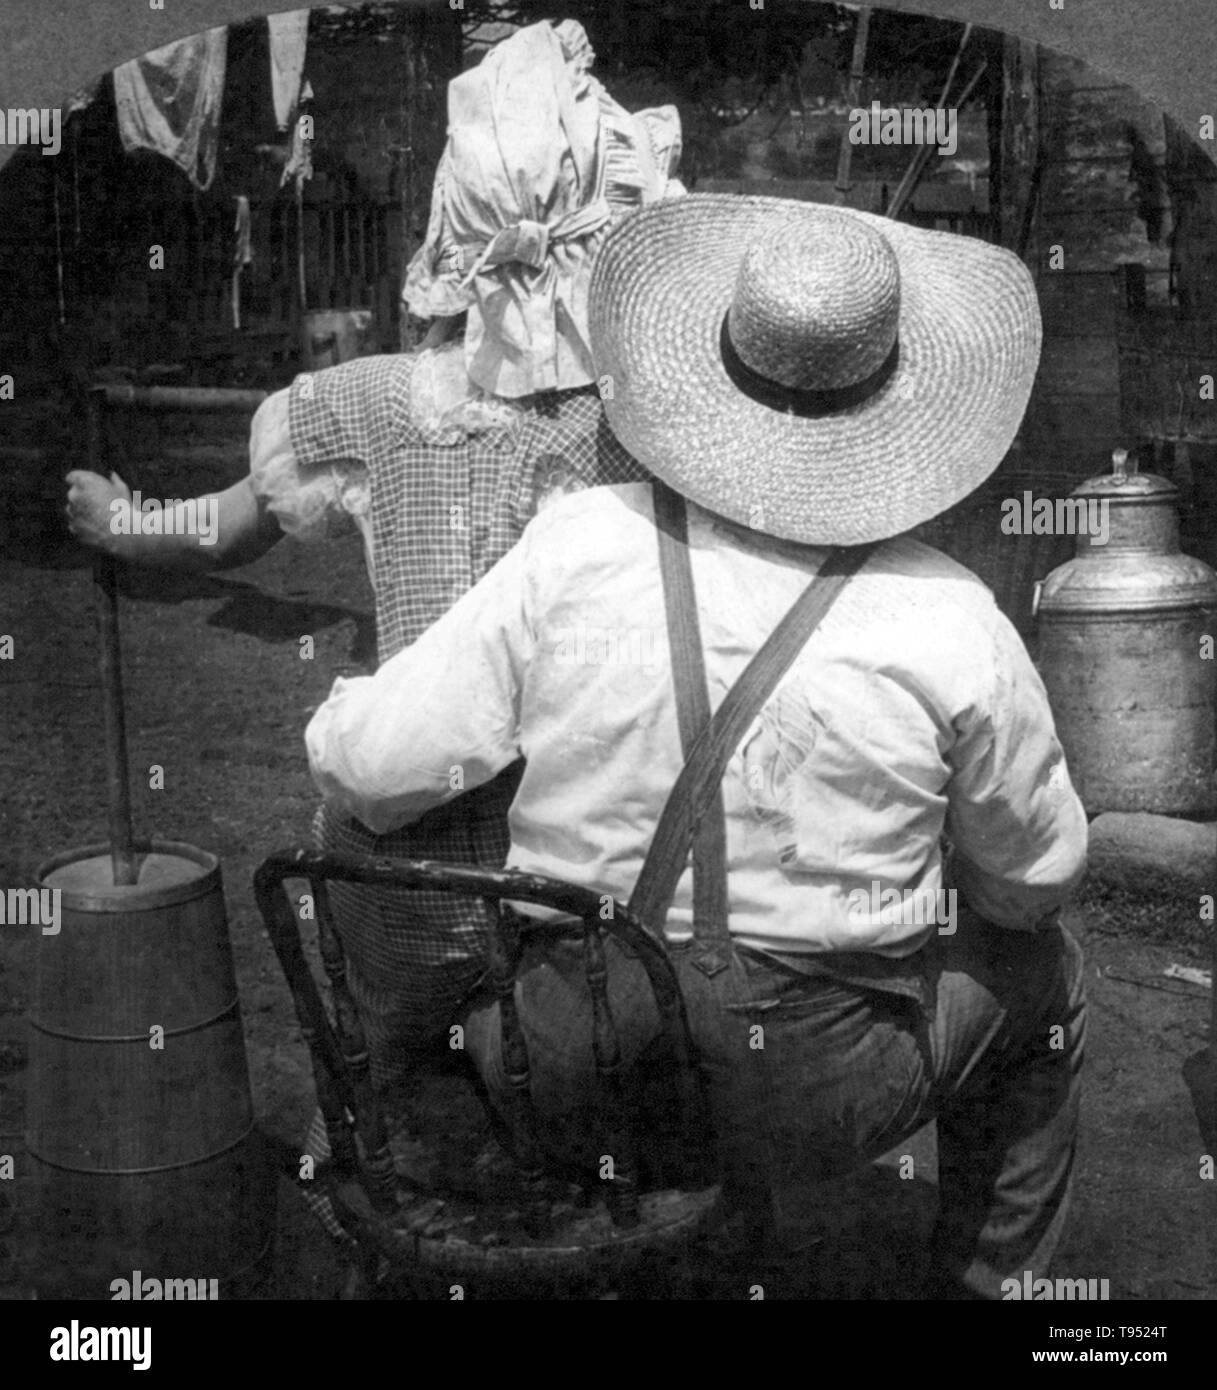 Intitulé : 'beurre sera jamais venir ?" montre une femme avec baratte assis sur les genoux de l'homme, vu de dos. Stéréophotogramme recadrée photographié par E.W. Kelley, 1906. Banque D'Images